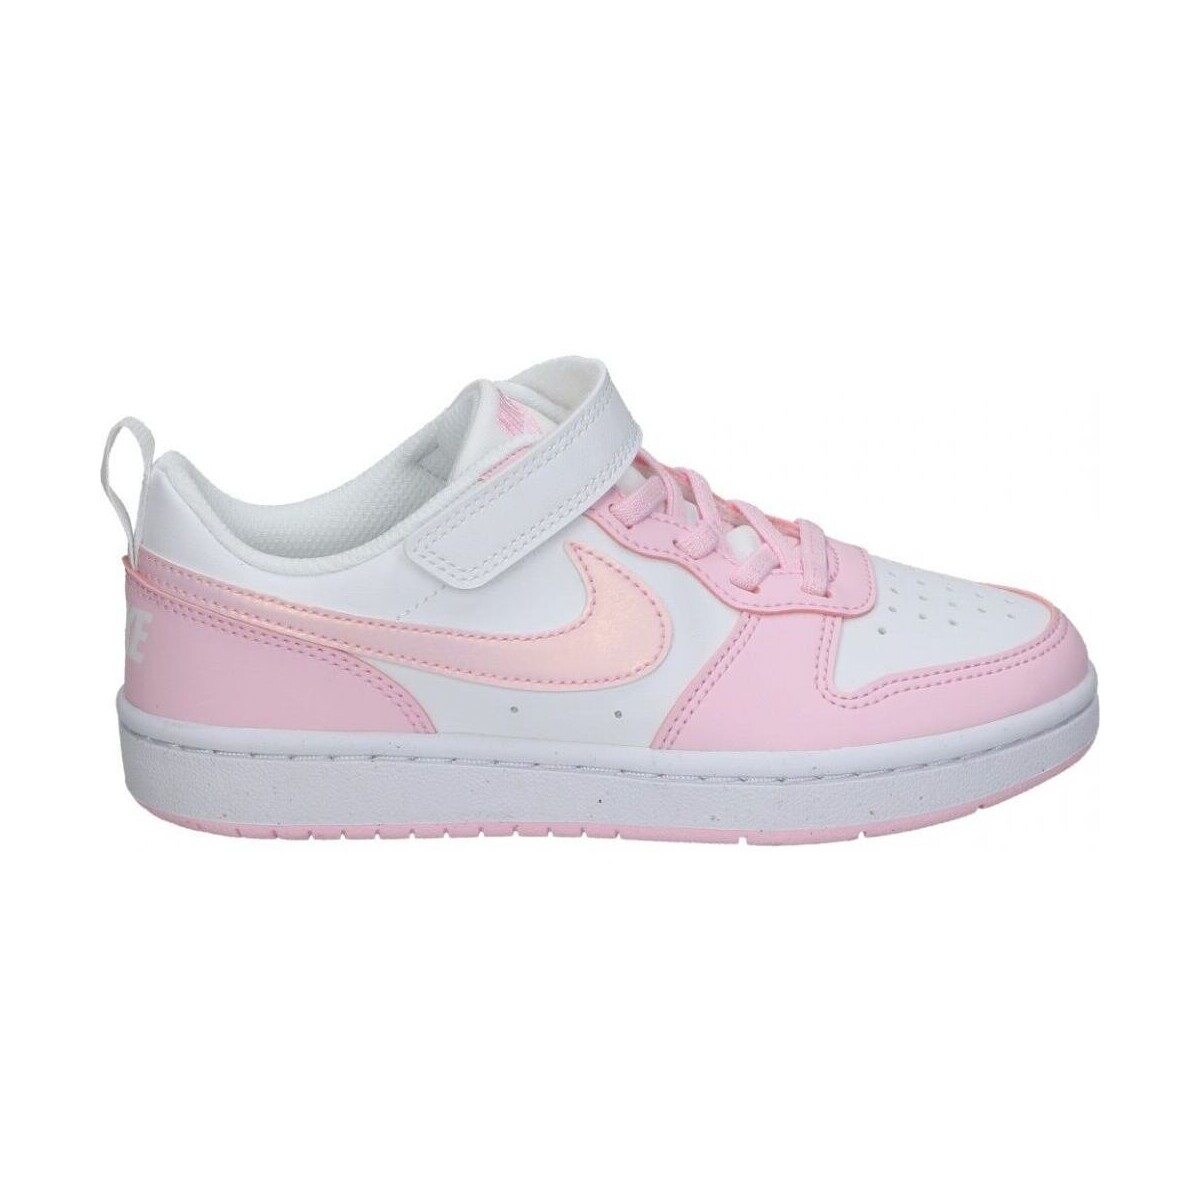 Boty Děti Módní tenisky Nike DV5457-105 Růžová